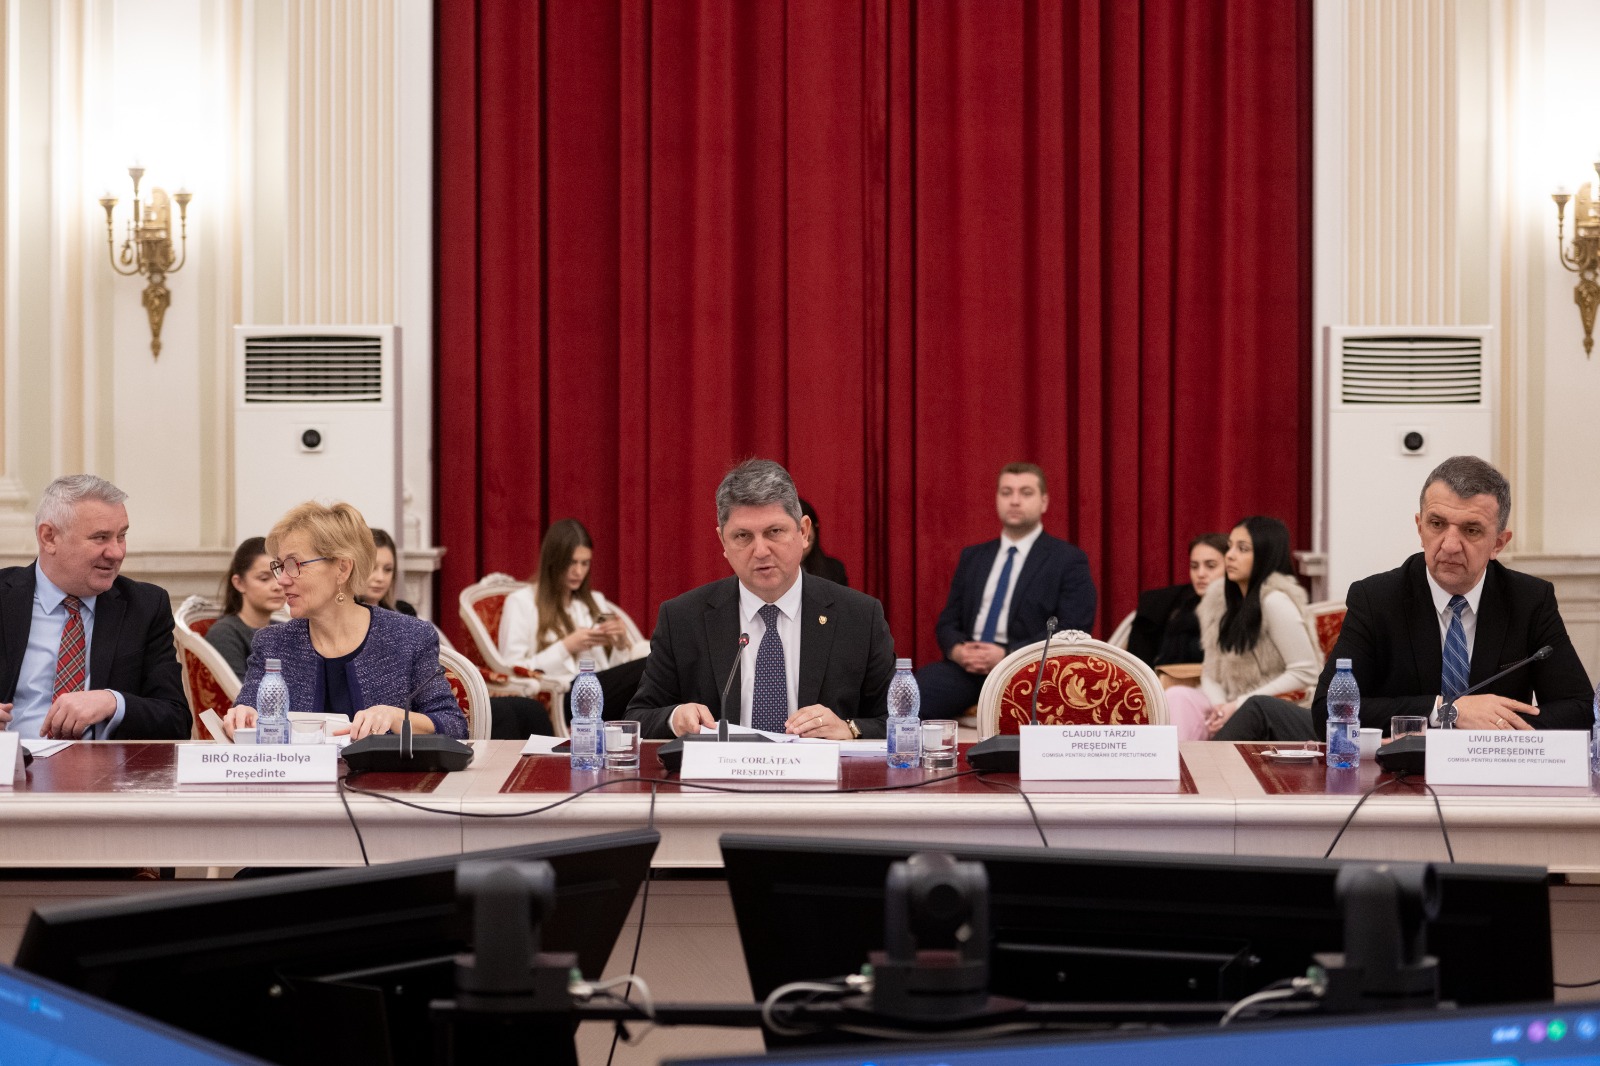 Senatorul Titus Corlățean a condus ședința de audiere a candidaților propuși pentru posturile de ambasadori ai României în străinătate